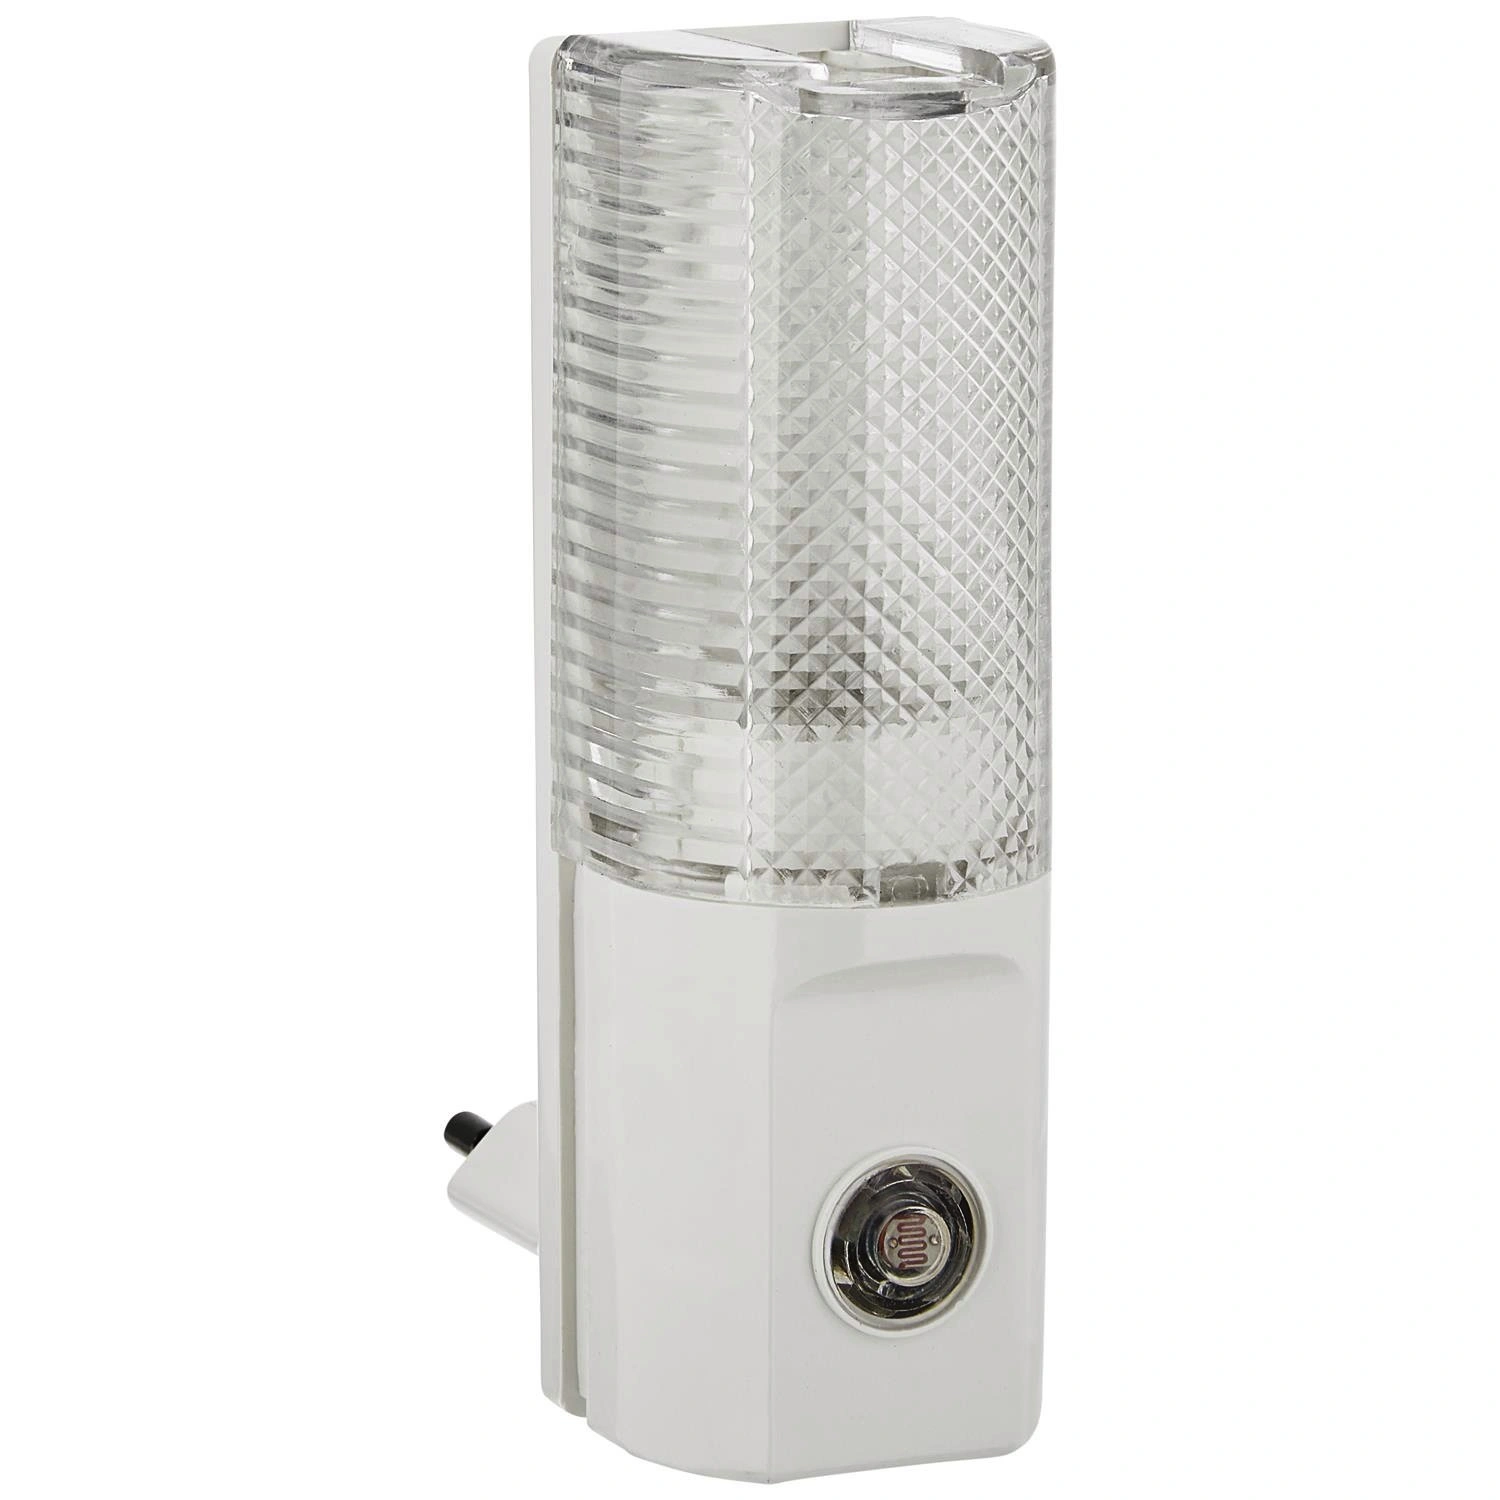 REV Nachtlicht mit Dämmerungsautomatik weiß 5 W 4 x 11 x 7 cm | Nachtlichter